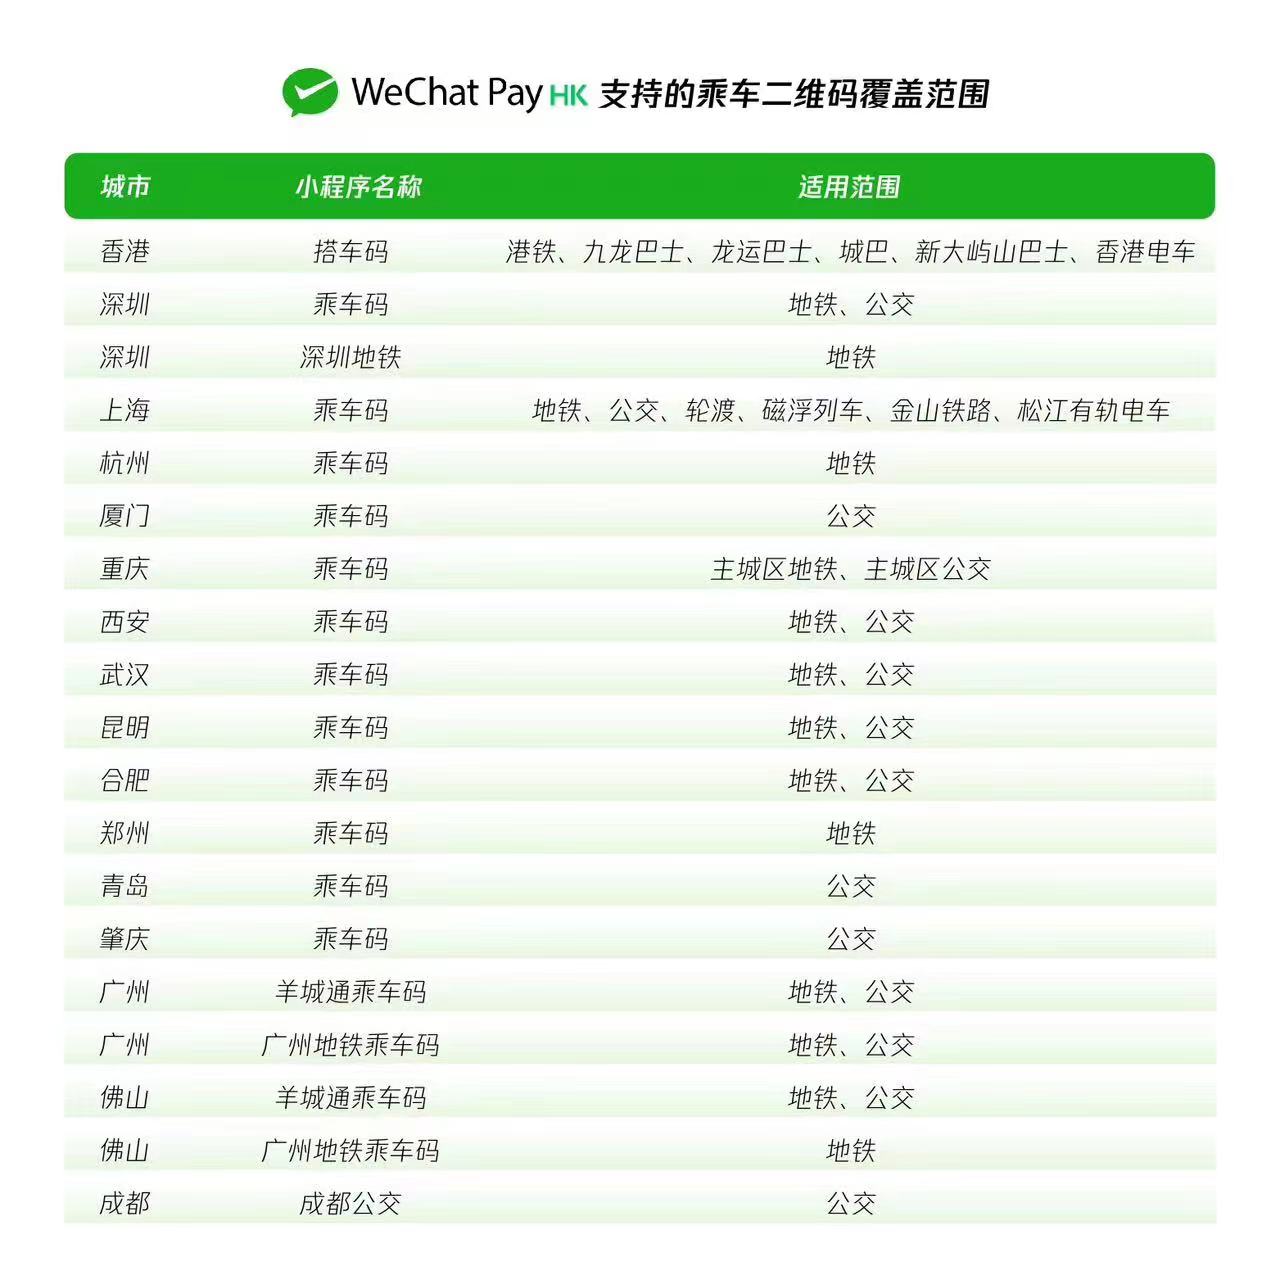 微信香港钱包（WeChat Pay HK）支持的乘车二维码覆盖范围